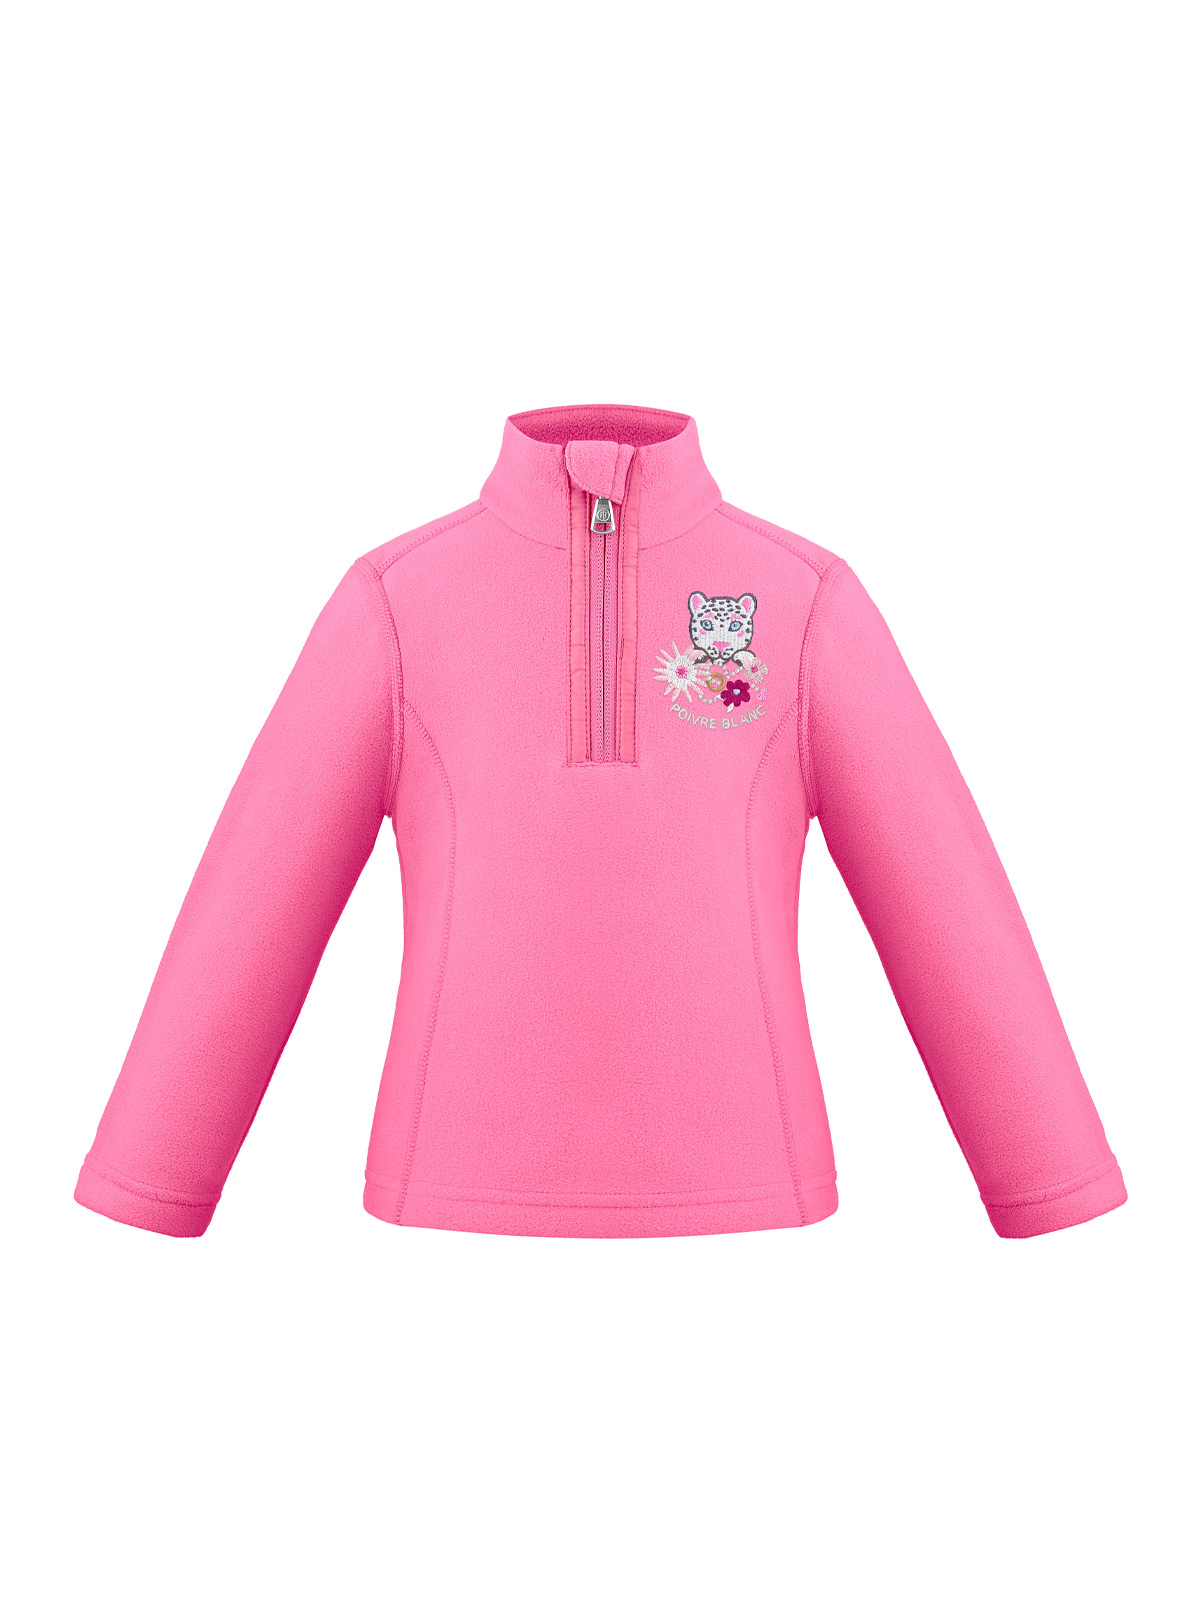 Poivre Blanc, ski jacket, women, Ambrosia pink